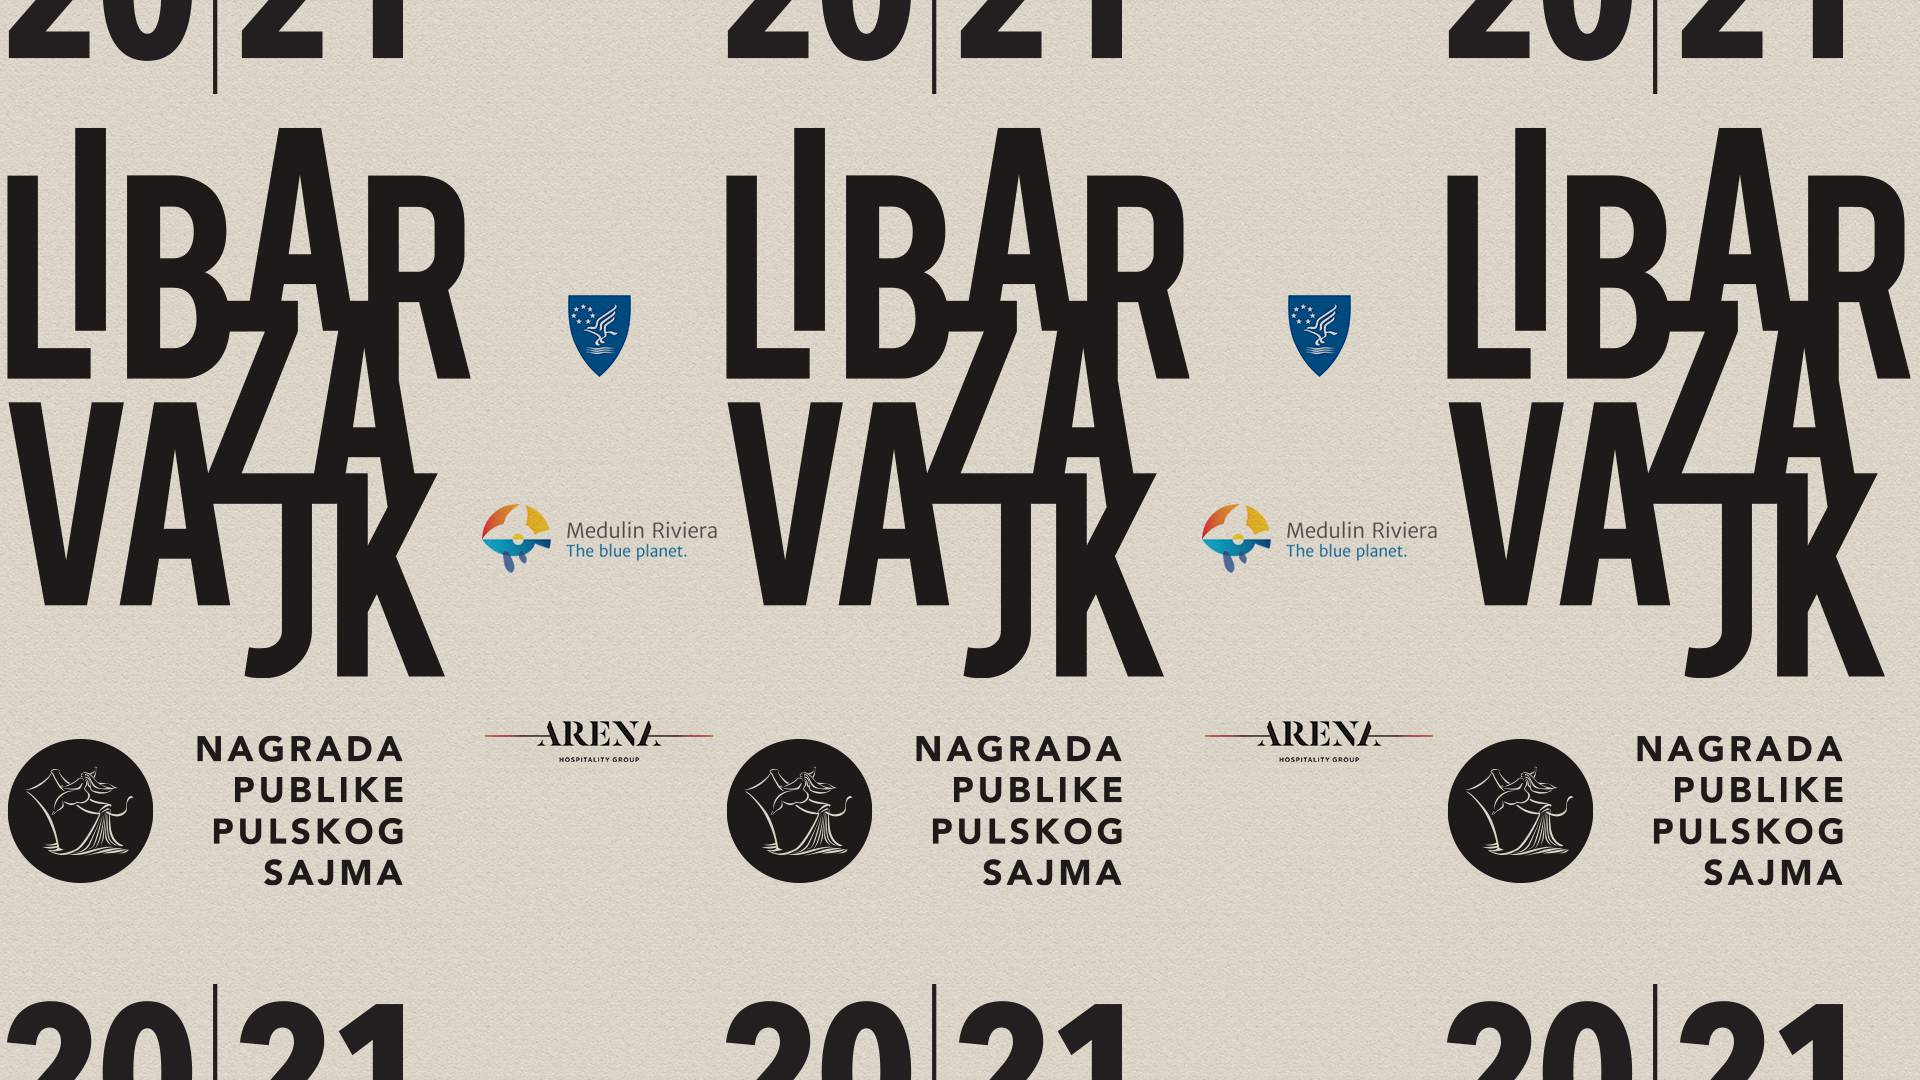 Objavili finaliste jedinstvene nagrade Sajma knjige u Istri